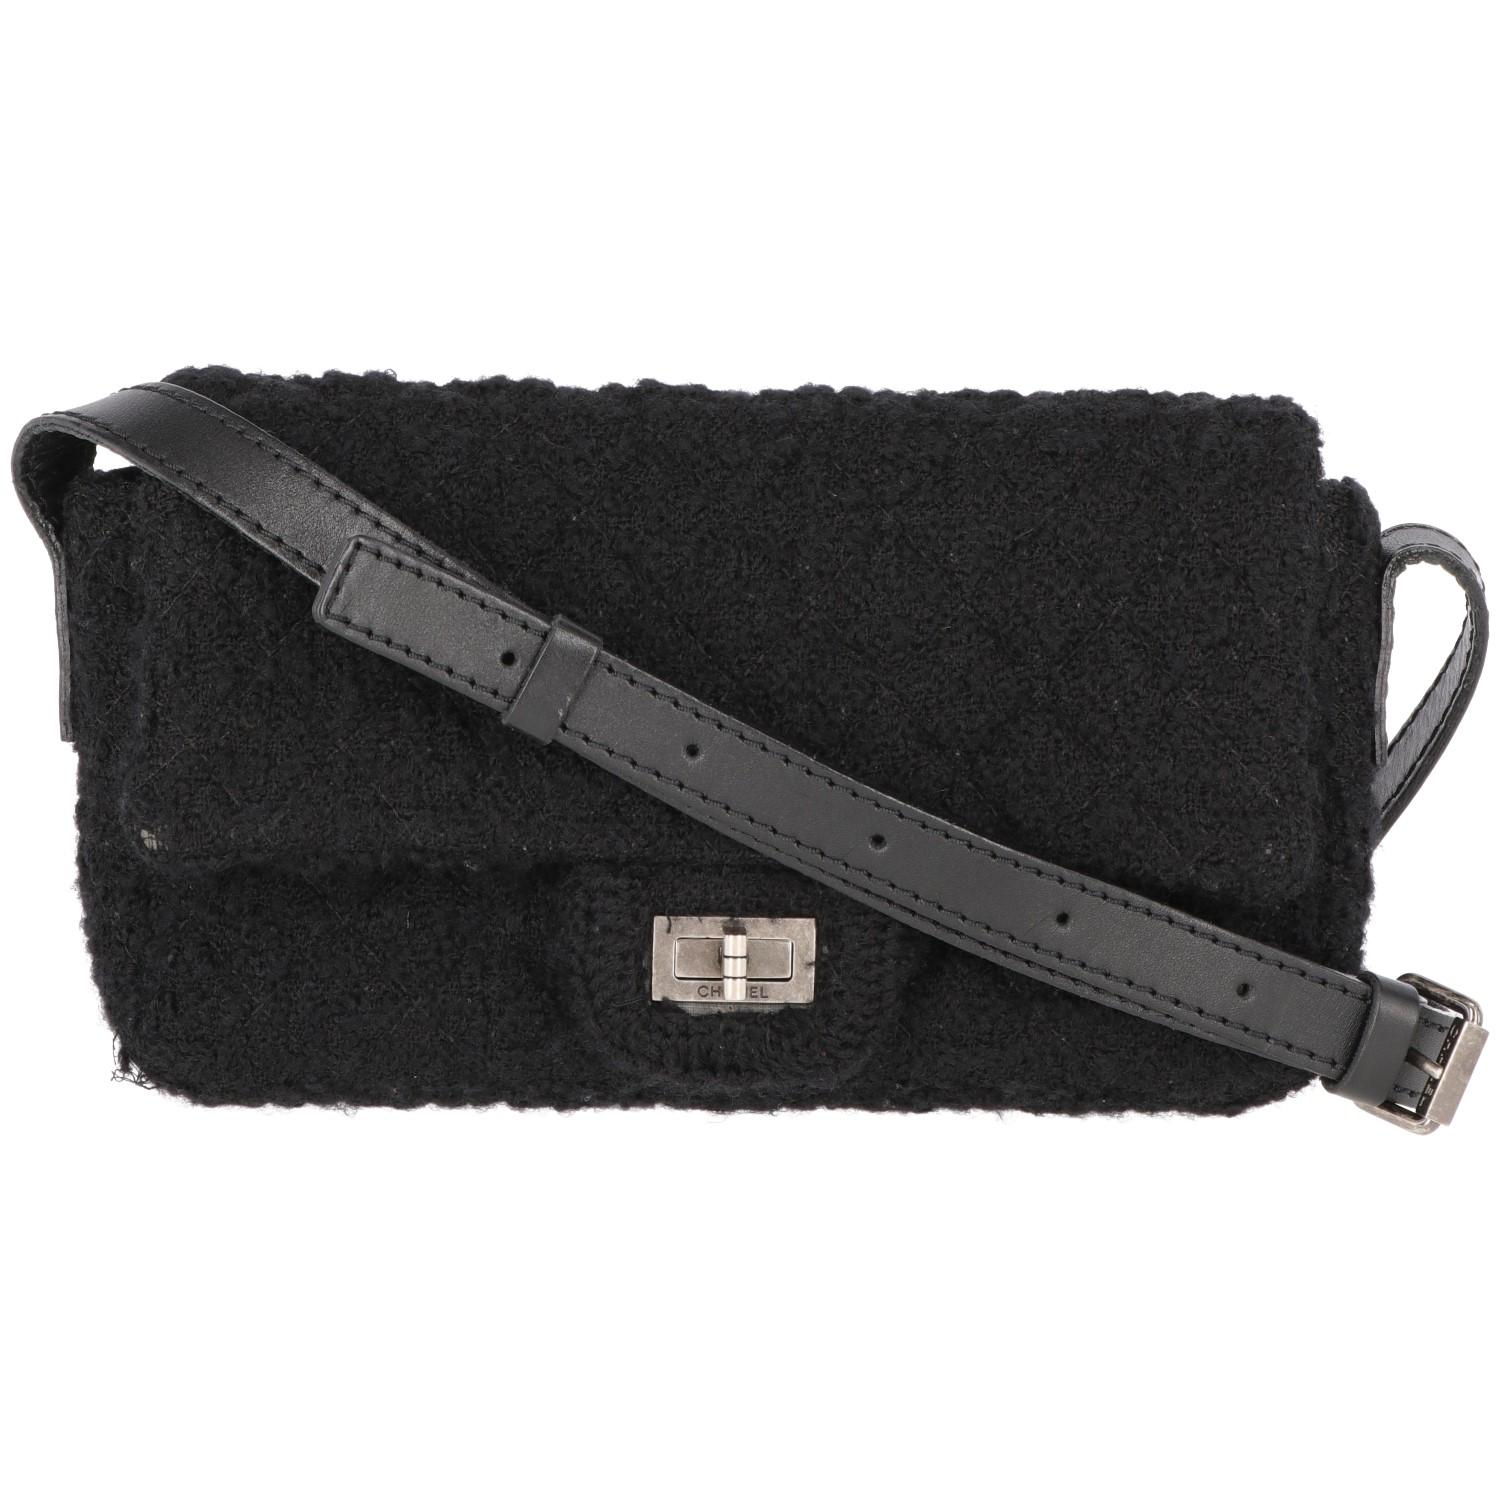 2008-2009s Chanel Black Tweed Vintage Bag